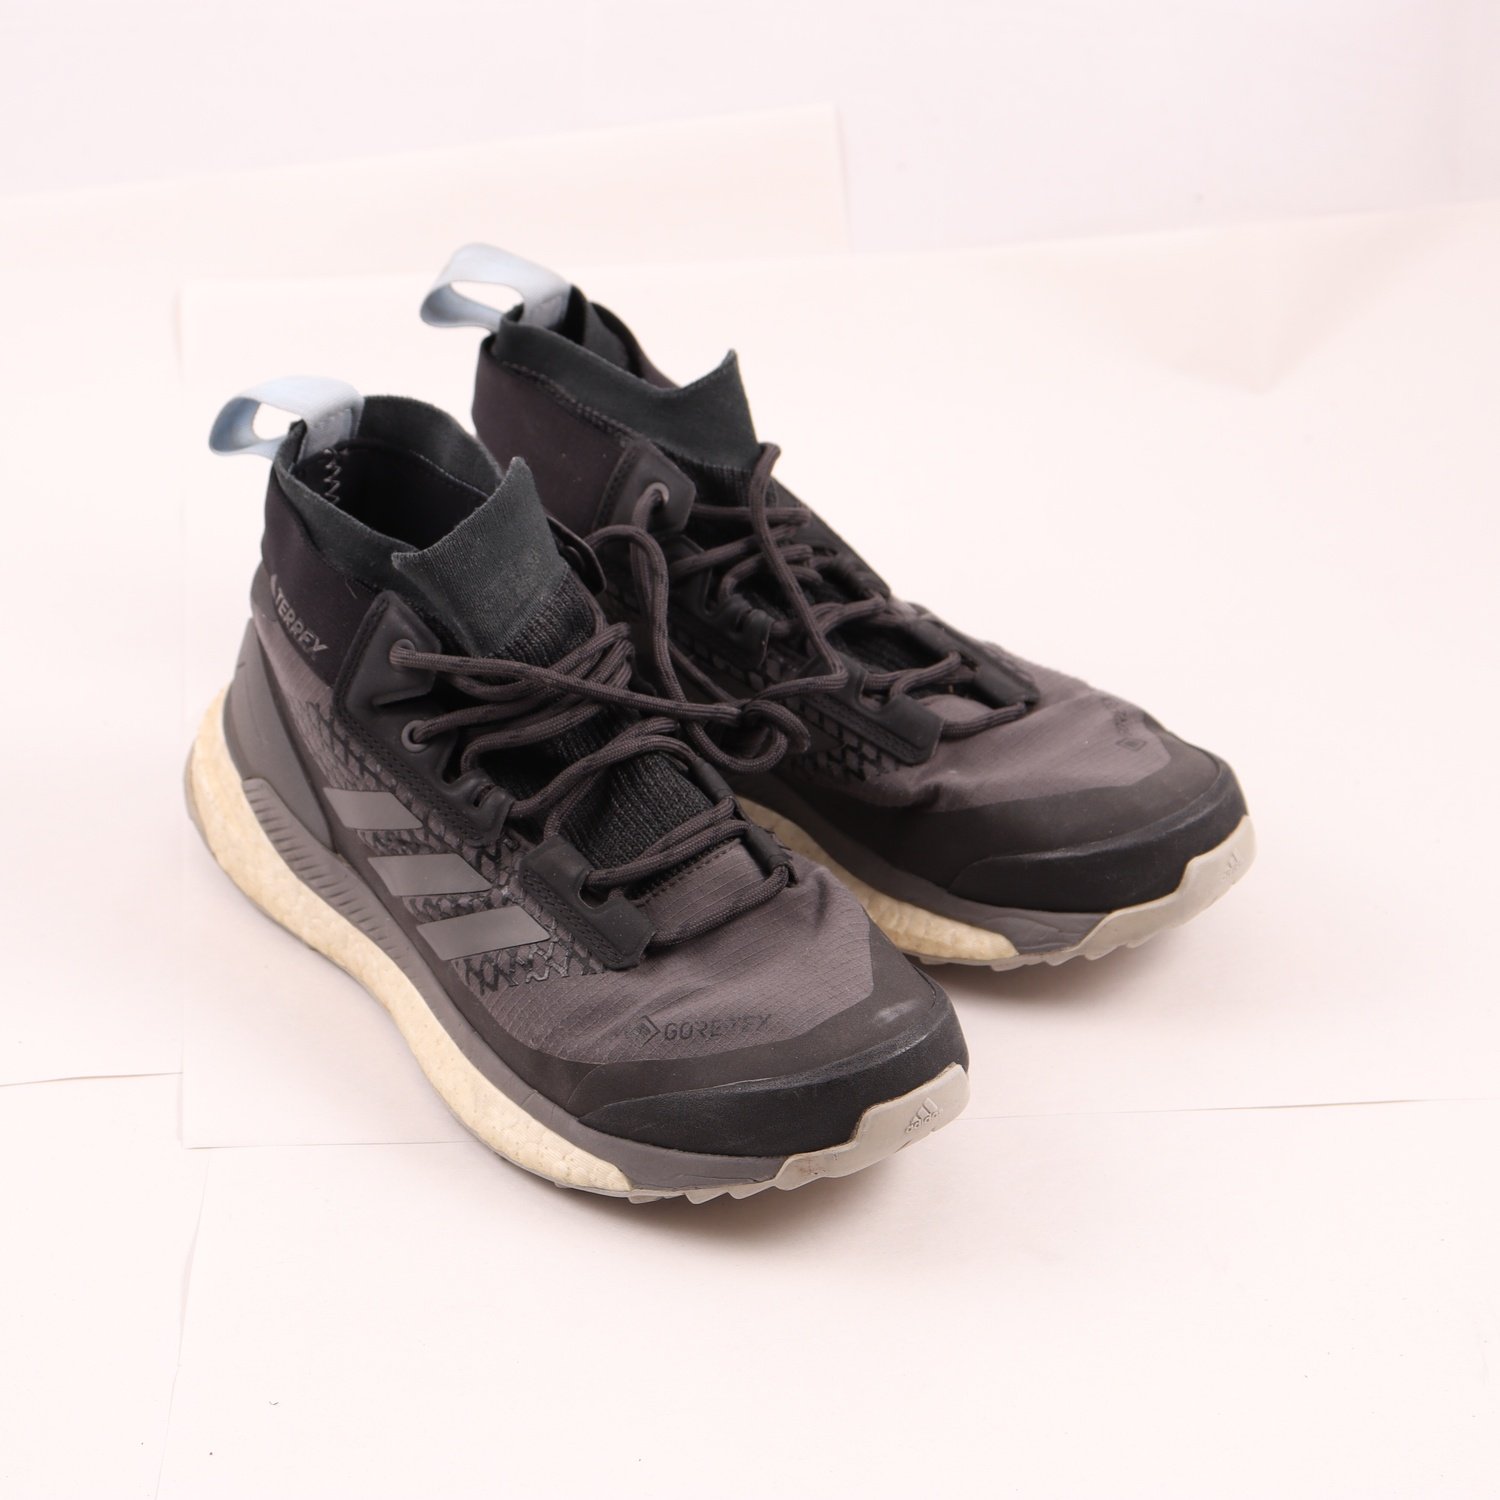 Sneakers, Adidas Terrex 345, Gore-Tex, stl. 38 (UK 5)